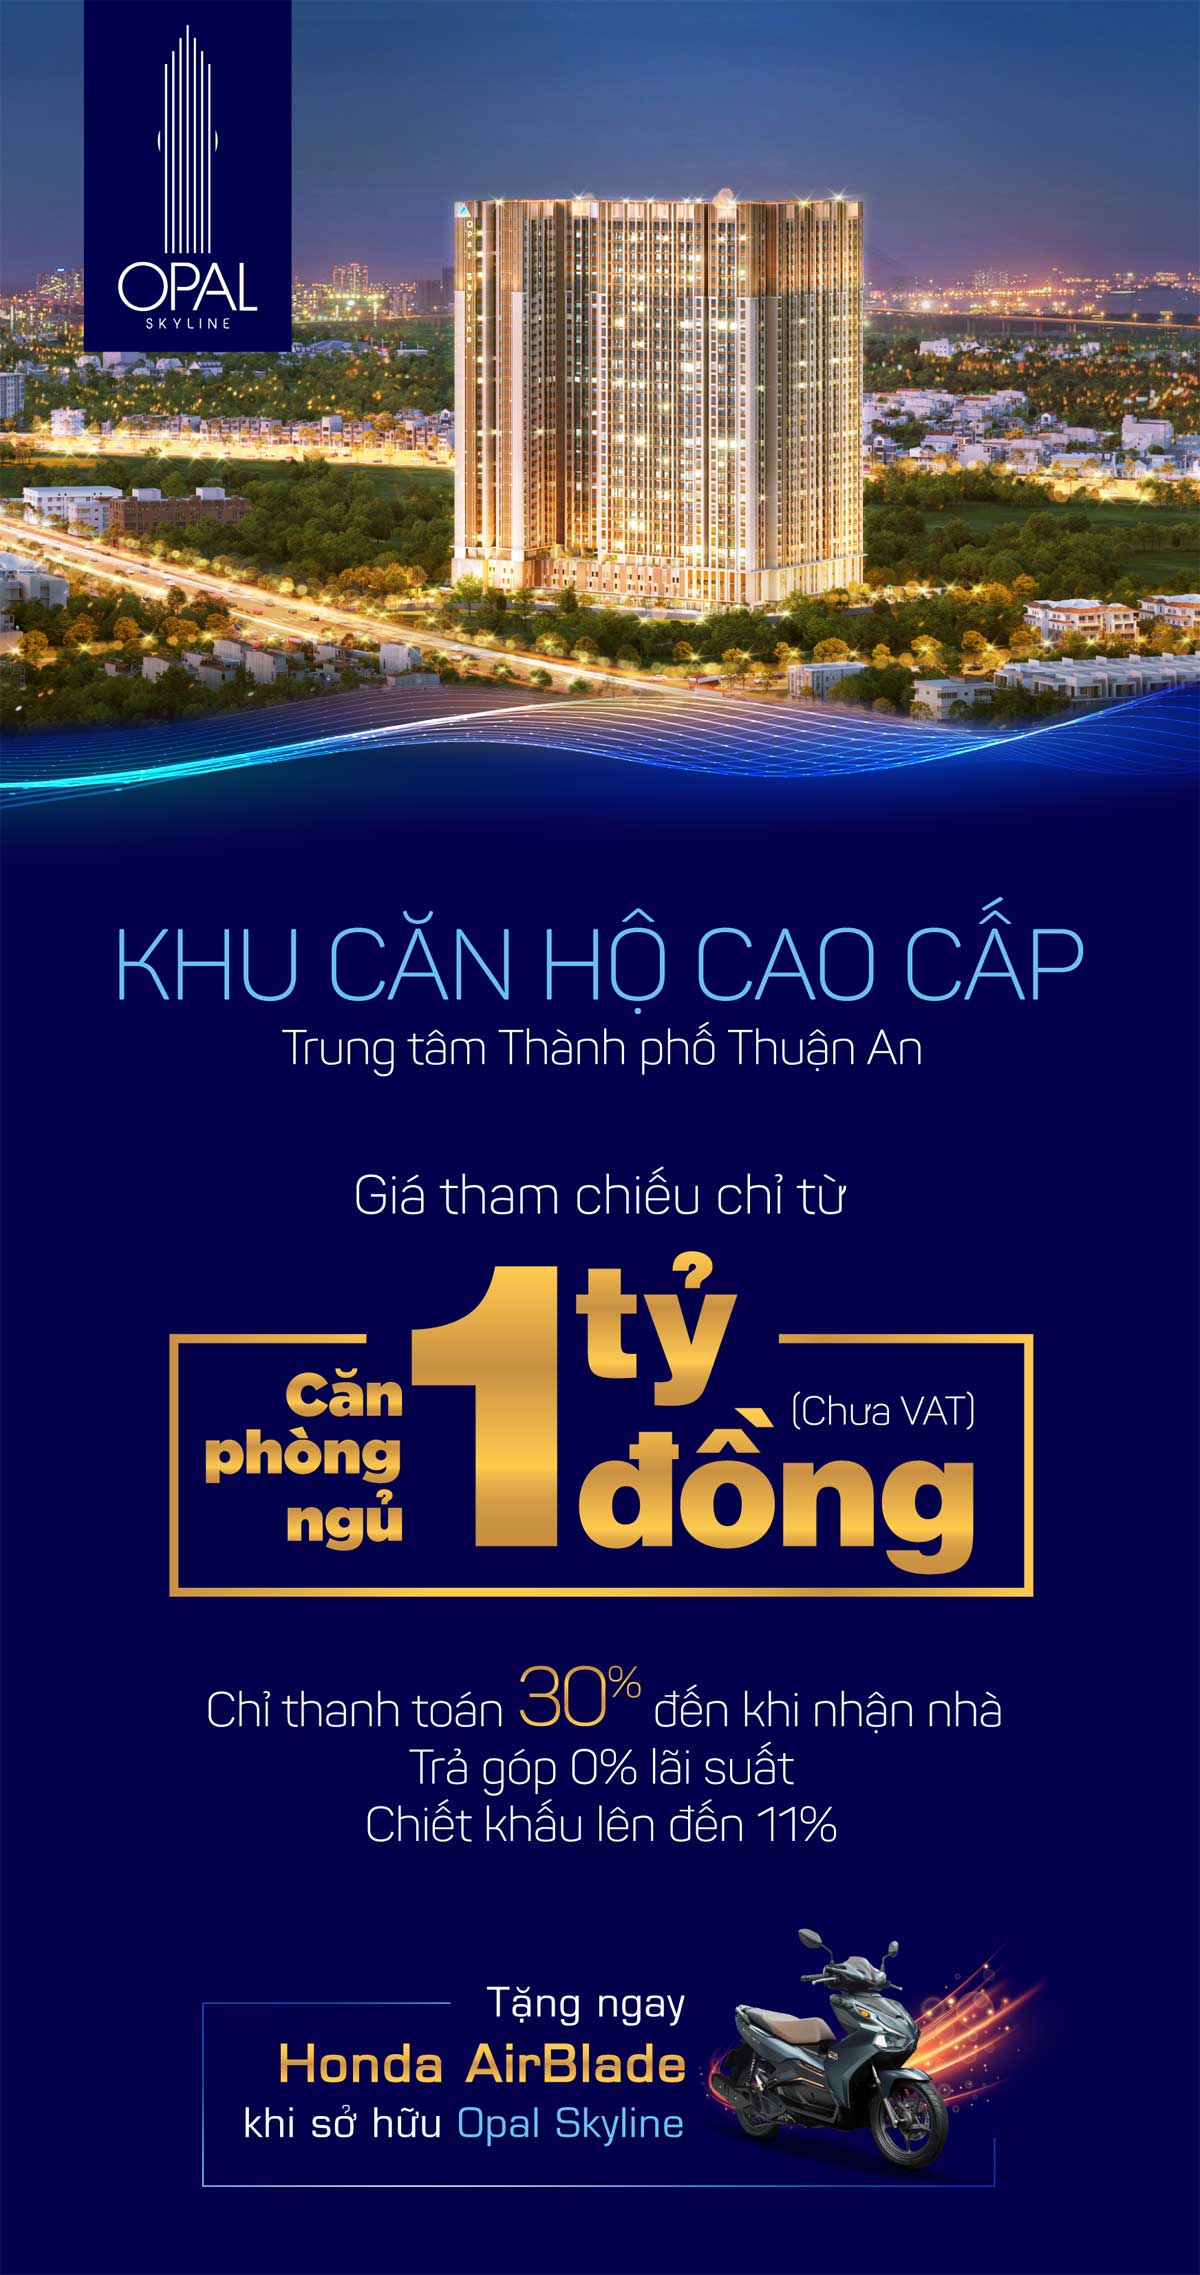 Căn hộ Opal Skyline Nguyễn Văn Tiết Thuận An Bình Dương